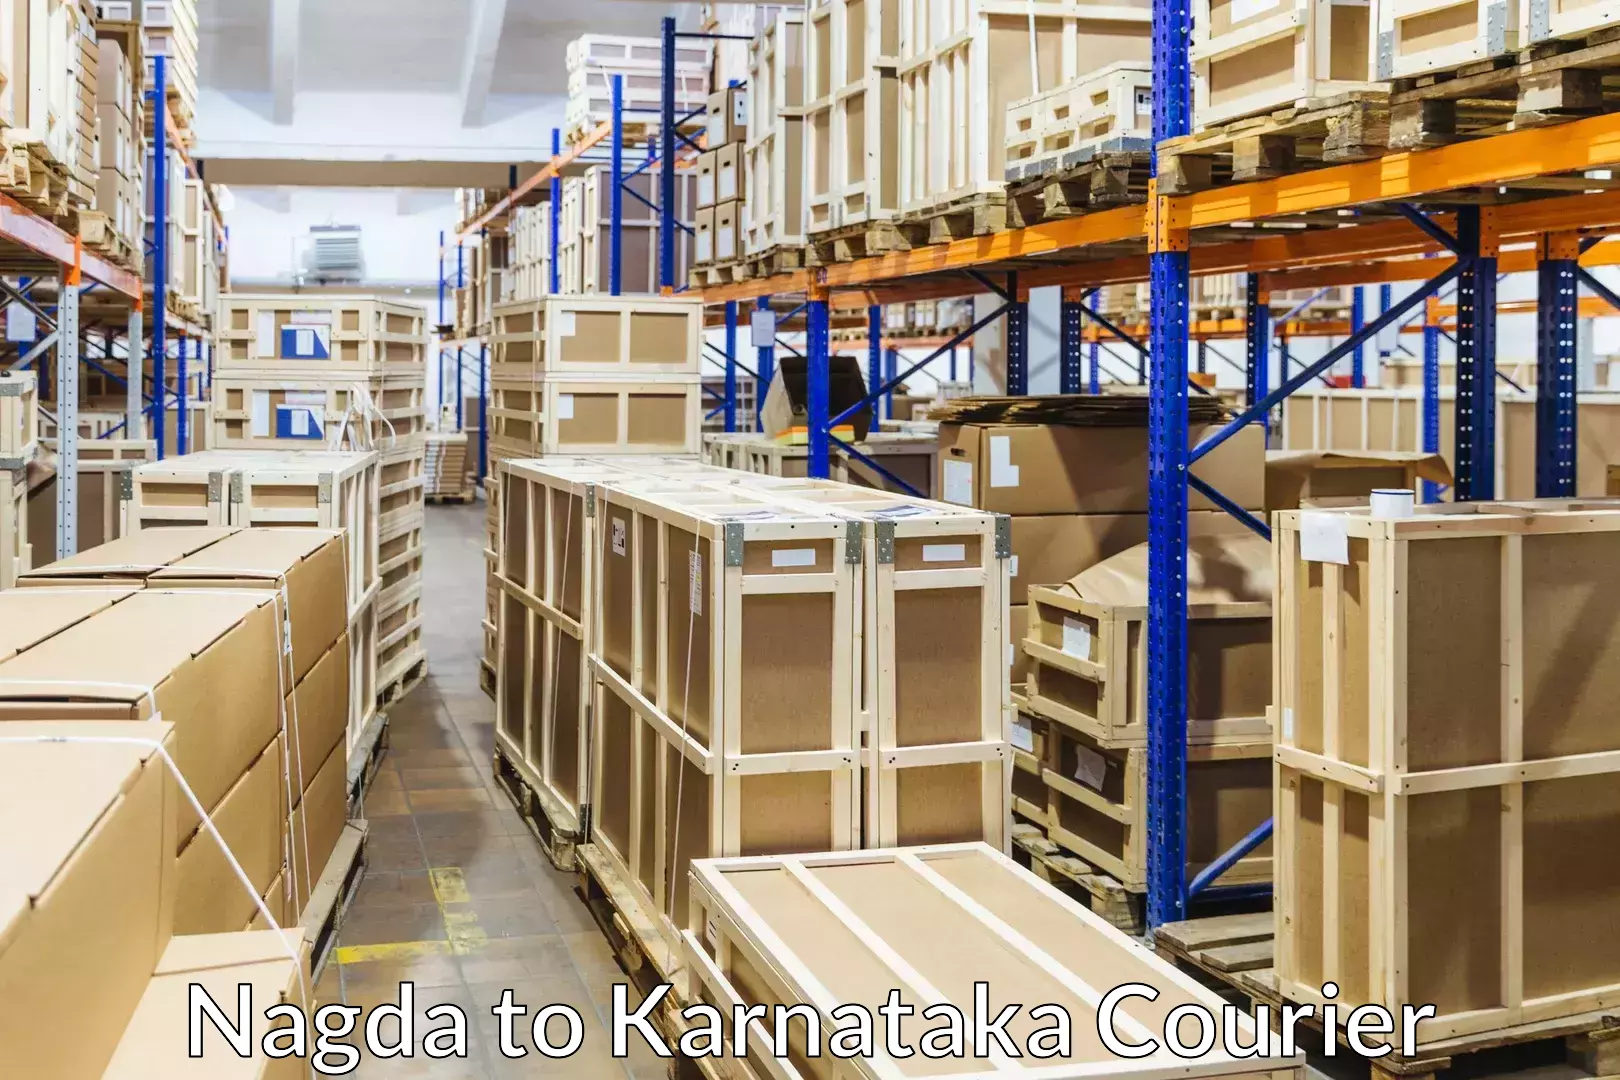 Furniture moving experts Nagda to Karnataka